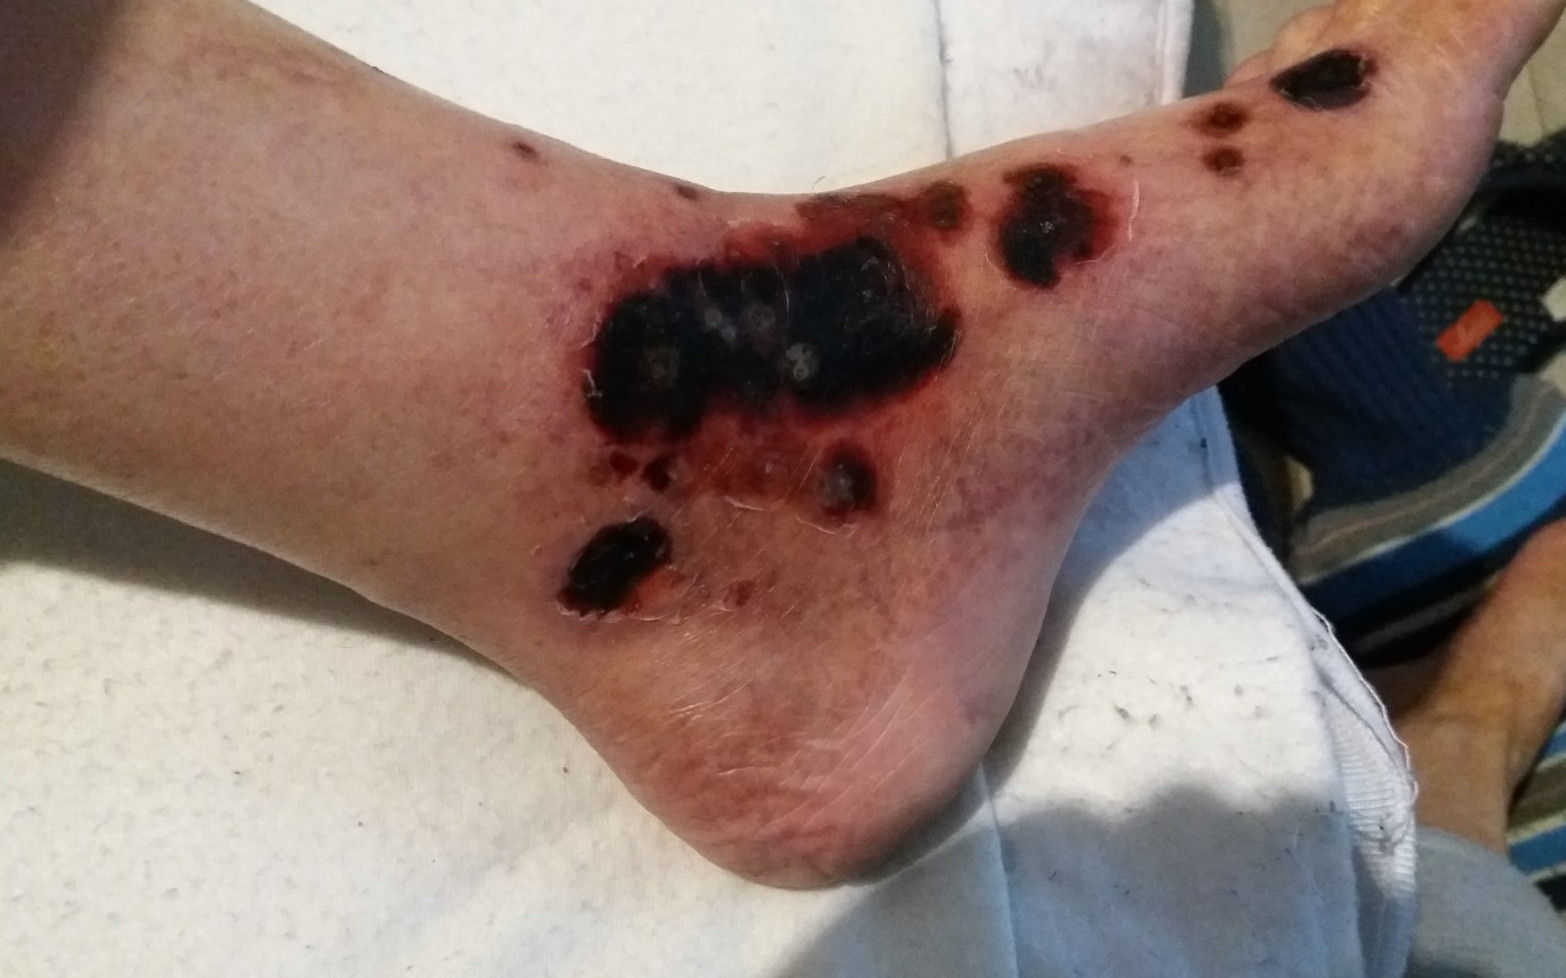 Črnina na nogi je znak, da se z nogo nekaj dogaja in je potrebna diagnostika takoj in zdaj.